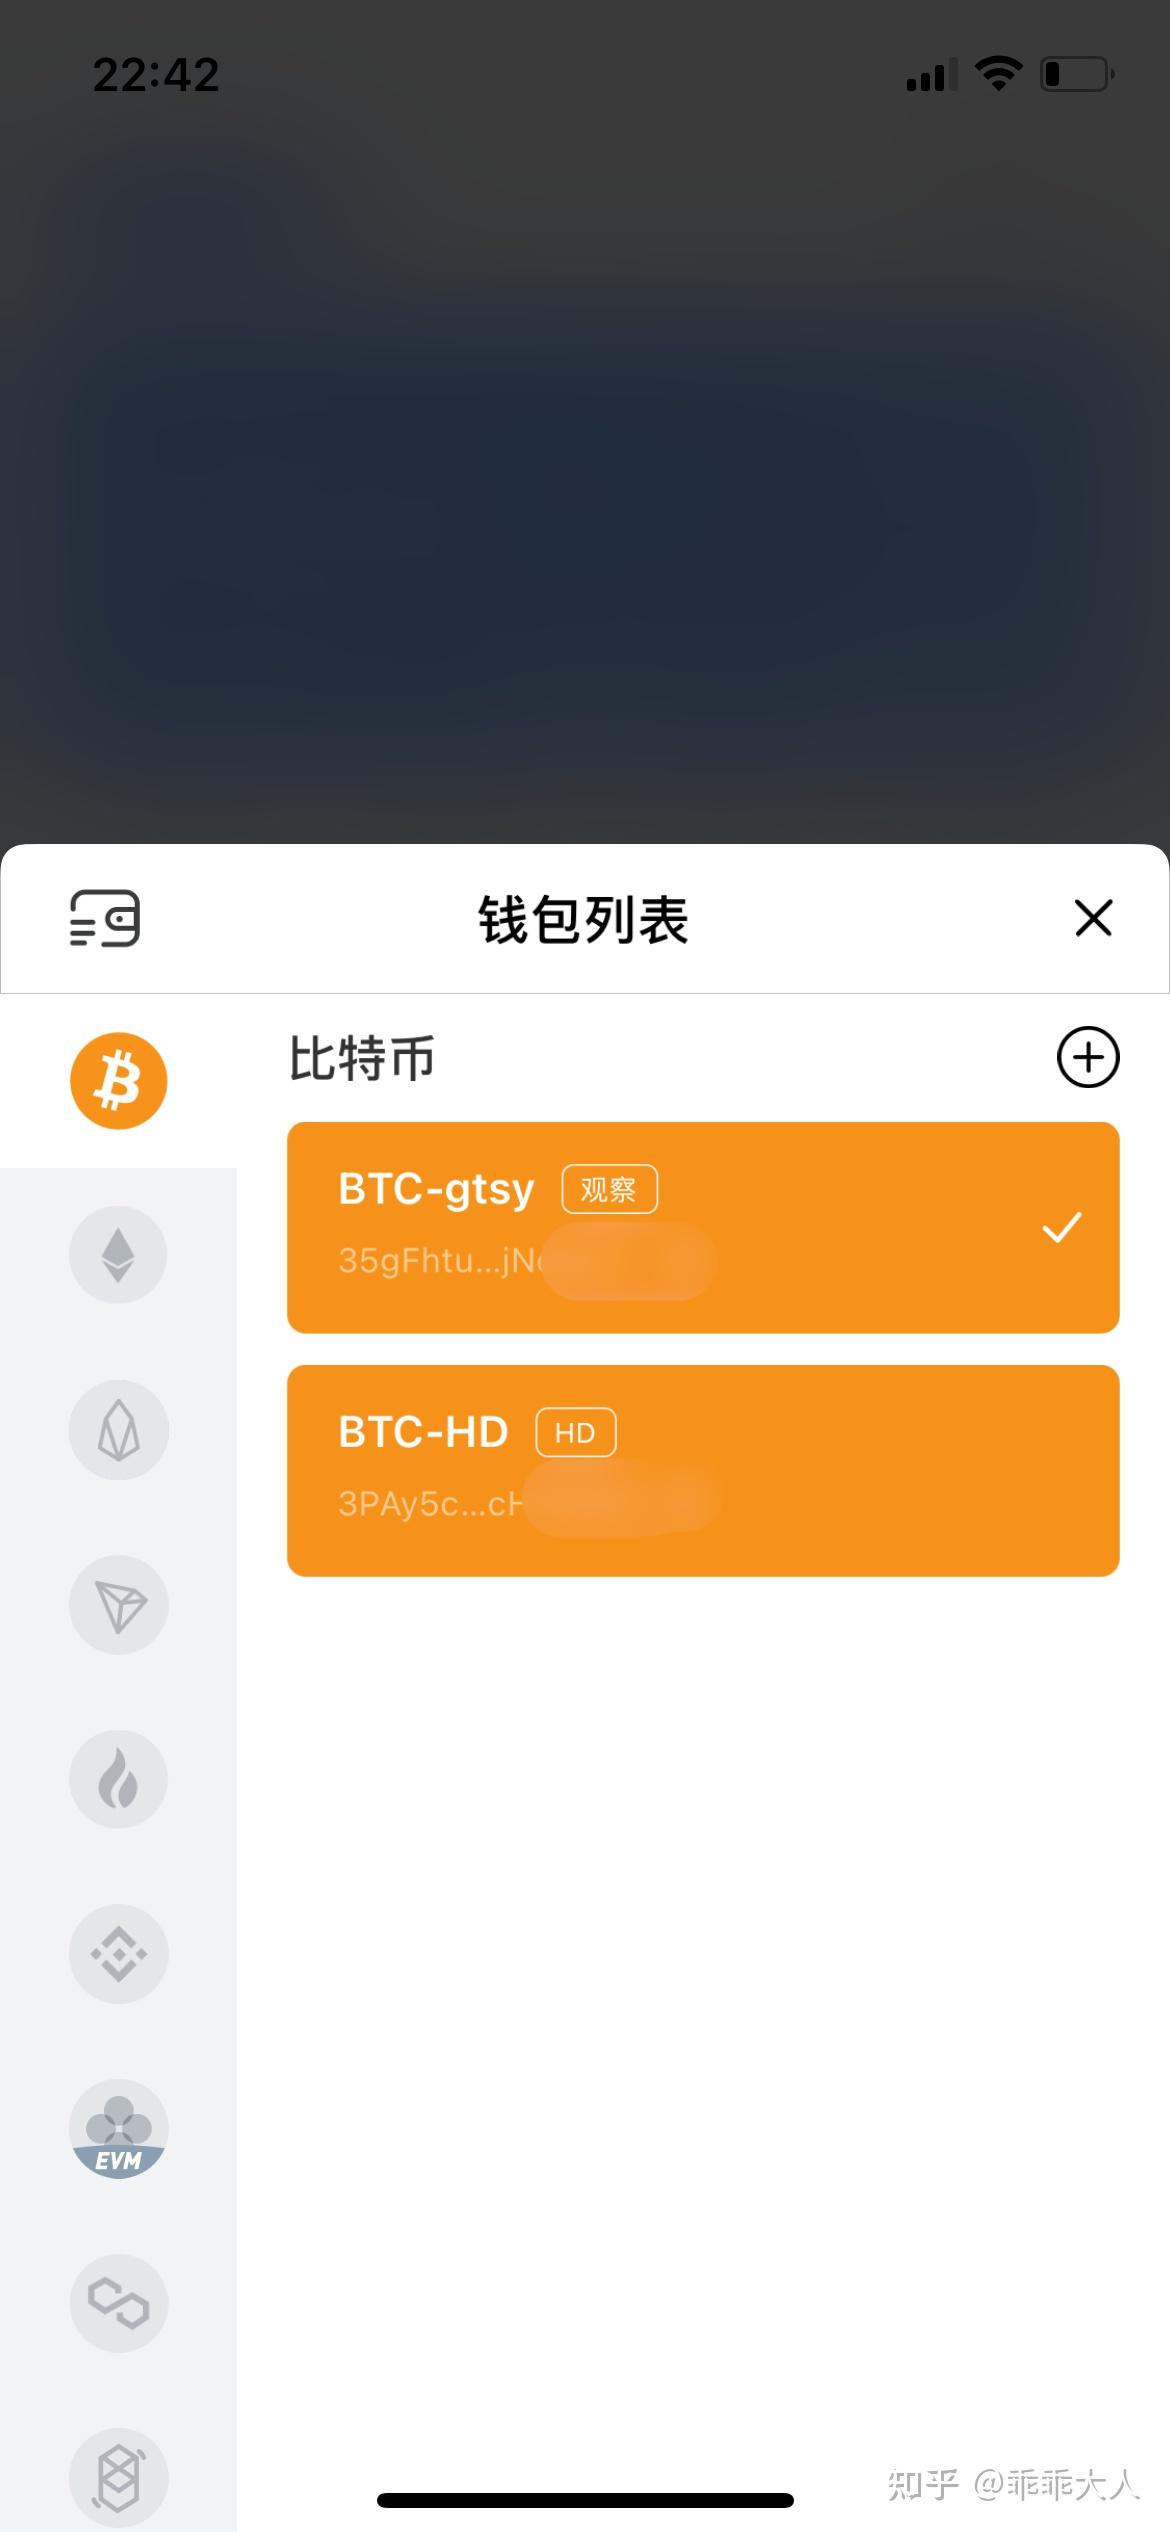 tp钱包官网下载app最新版本sdykcc,tp钱包官网下载app最新版本shjinchi